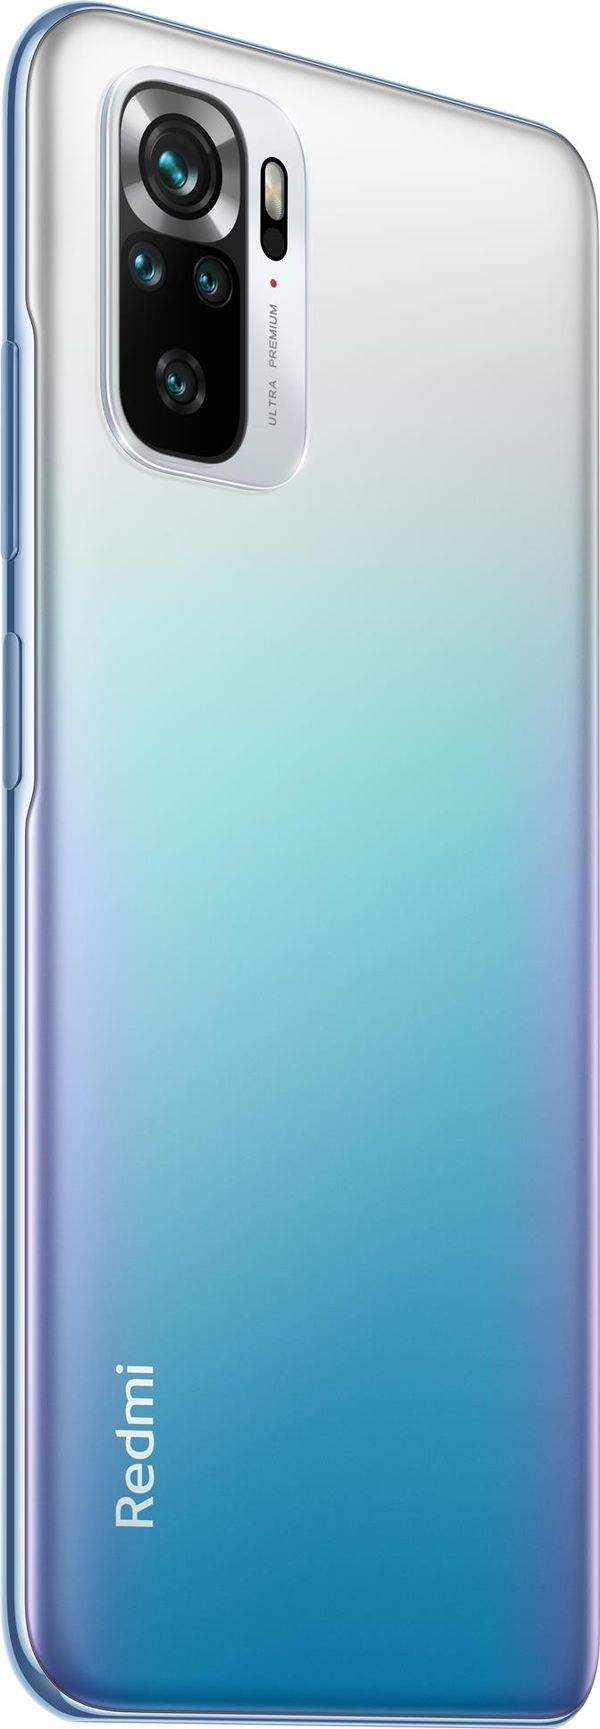 RE-951K7BN60001-PQ smartphone reacondicionado xiaomi redmi note 10s ocean blue 6g ram 128gb rom grado a